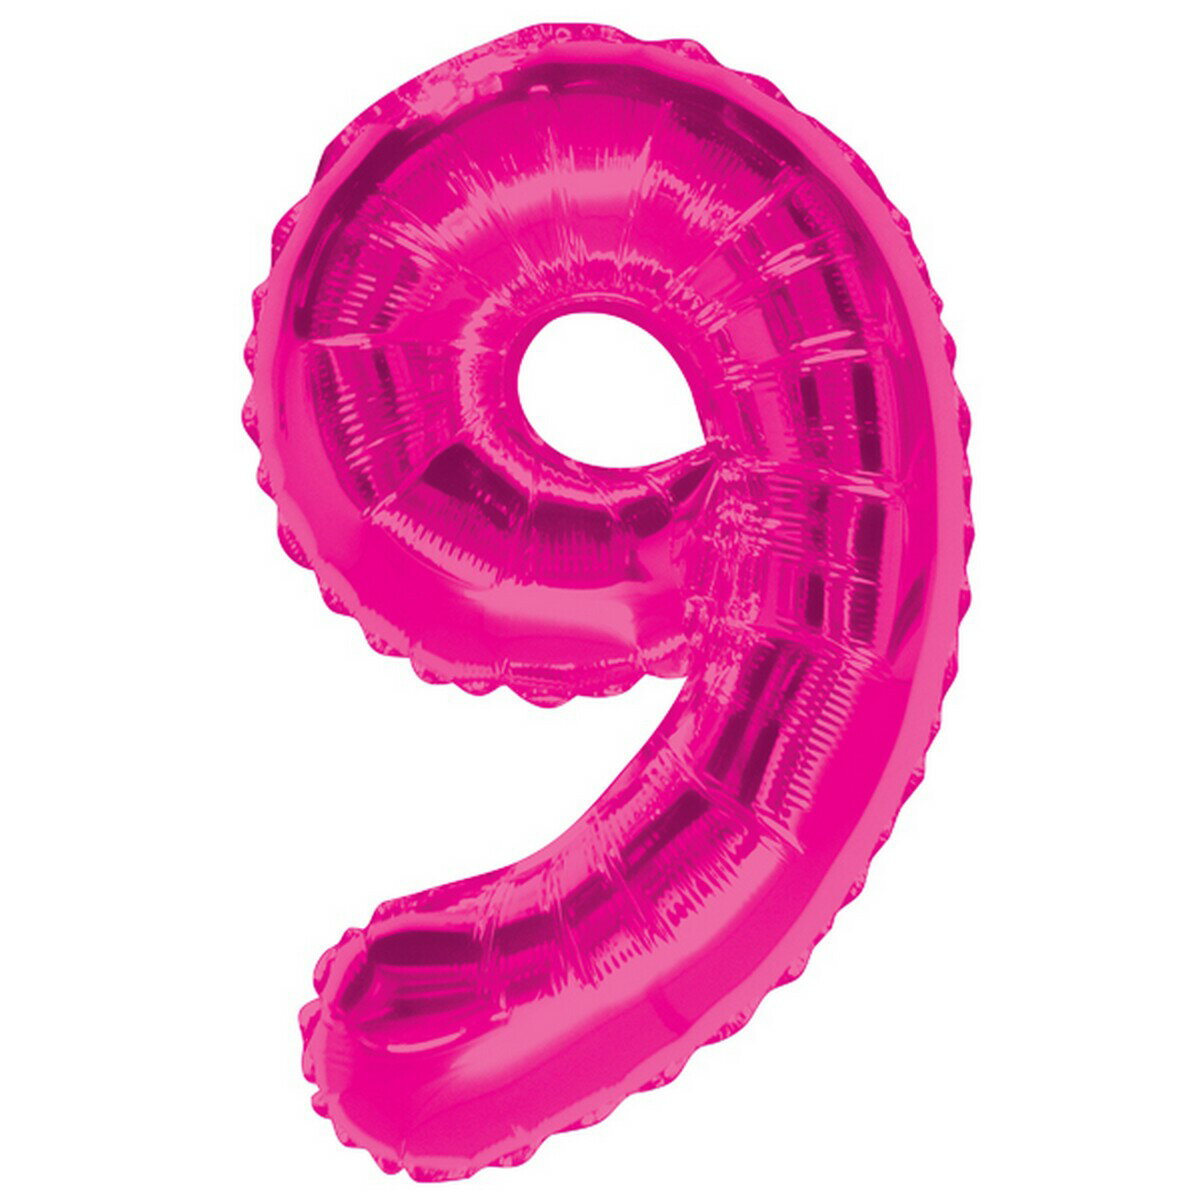 (ユニーク・パーティー) Unique Party ピンク ナンバー 数字 アルミ風船 パーティー バルーン デコレーション (0-9) 【海外通販】